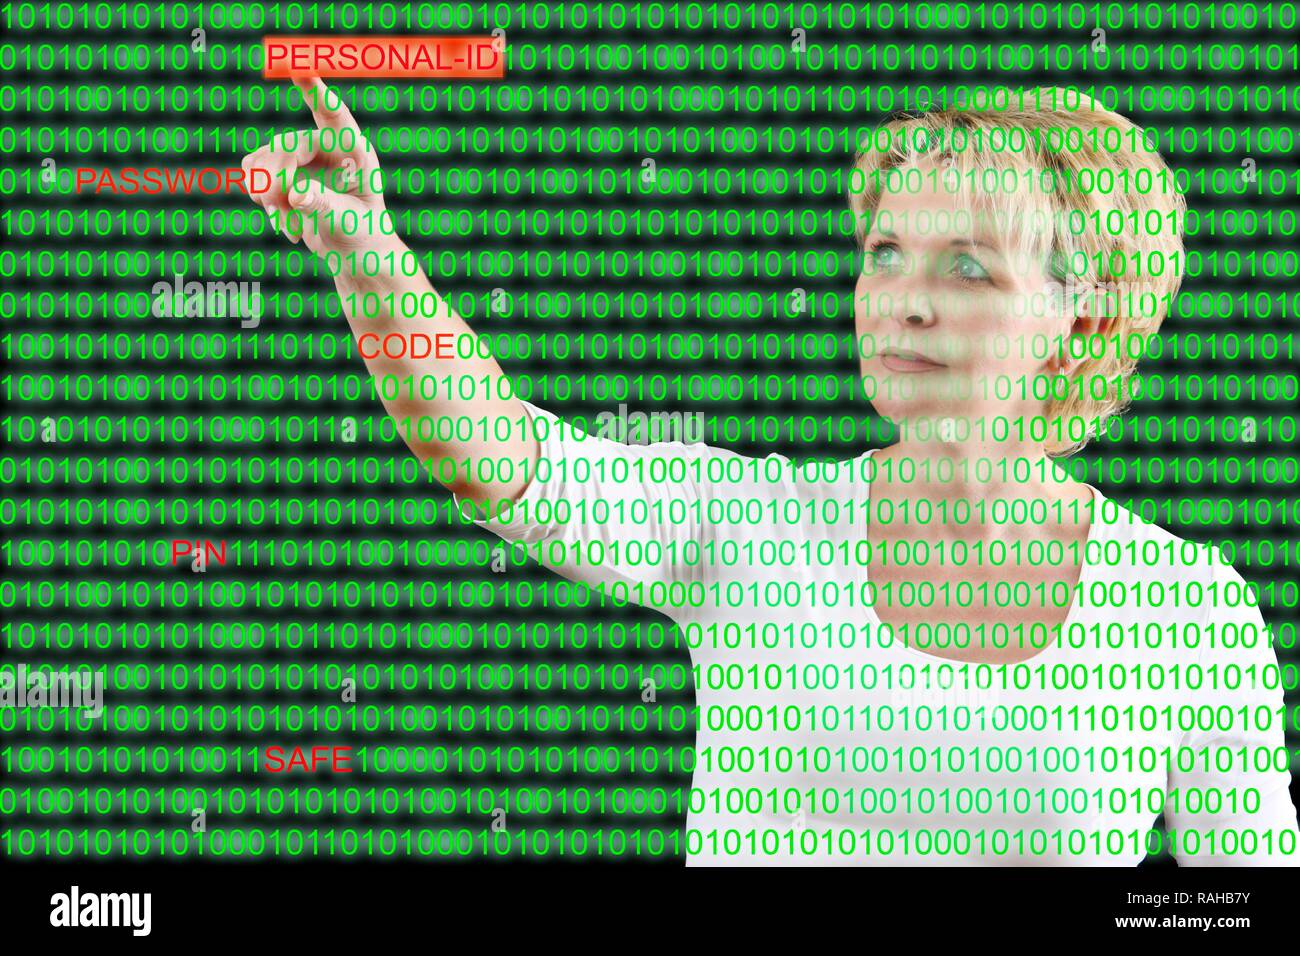 Femme avec un code de l'ordinateur et le mot 'ID' Personnelle, image symbolique pour les pirates informatiques, la sécurité des données, la criminalité informatique Banque D'Images